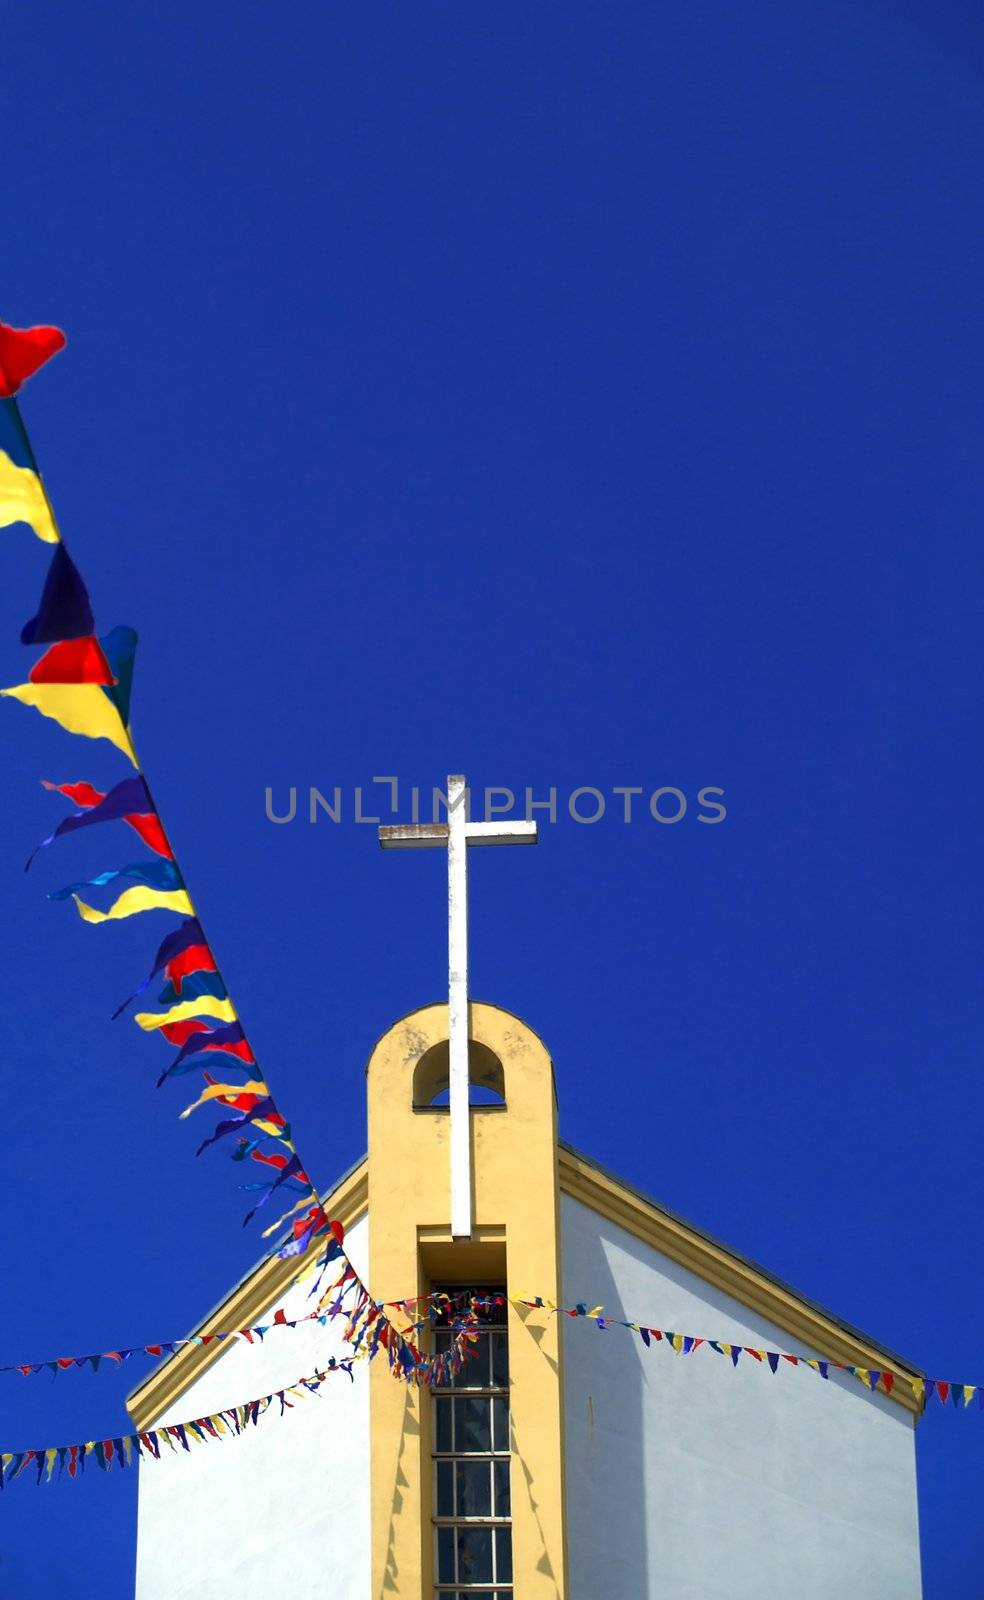 Catholic church by velkol